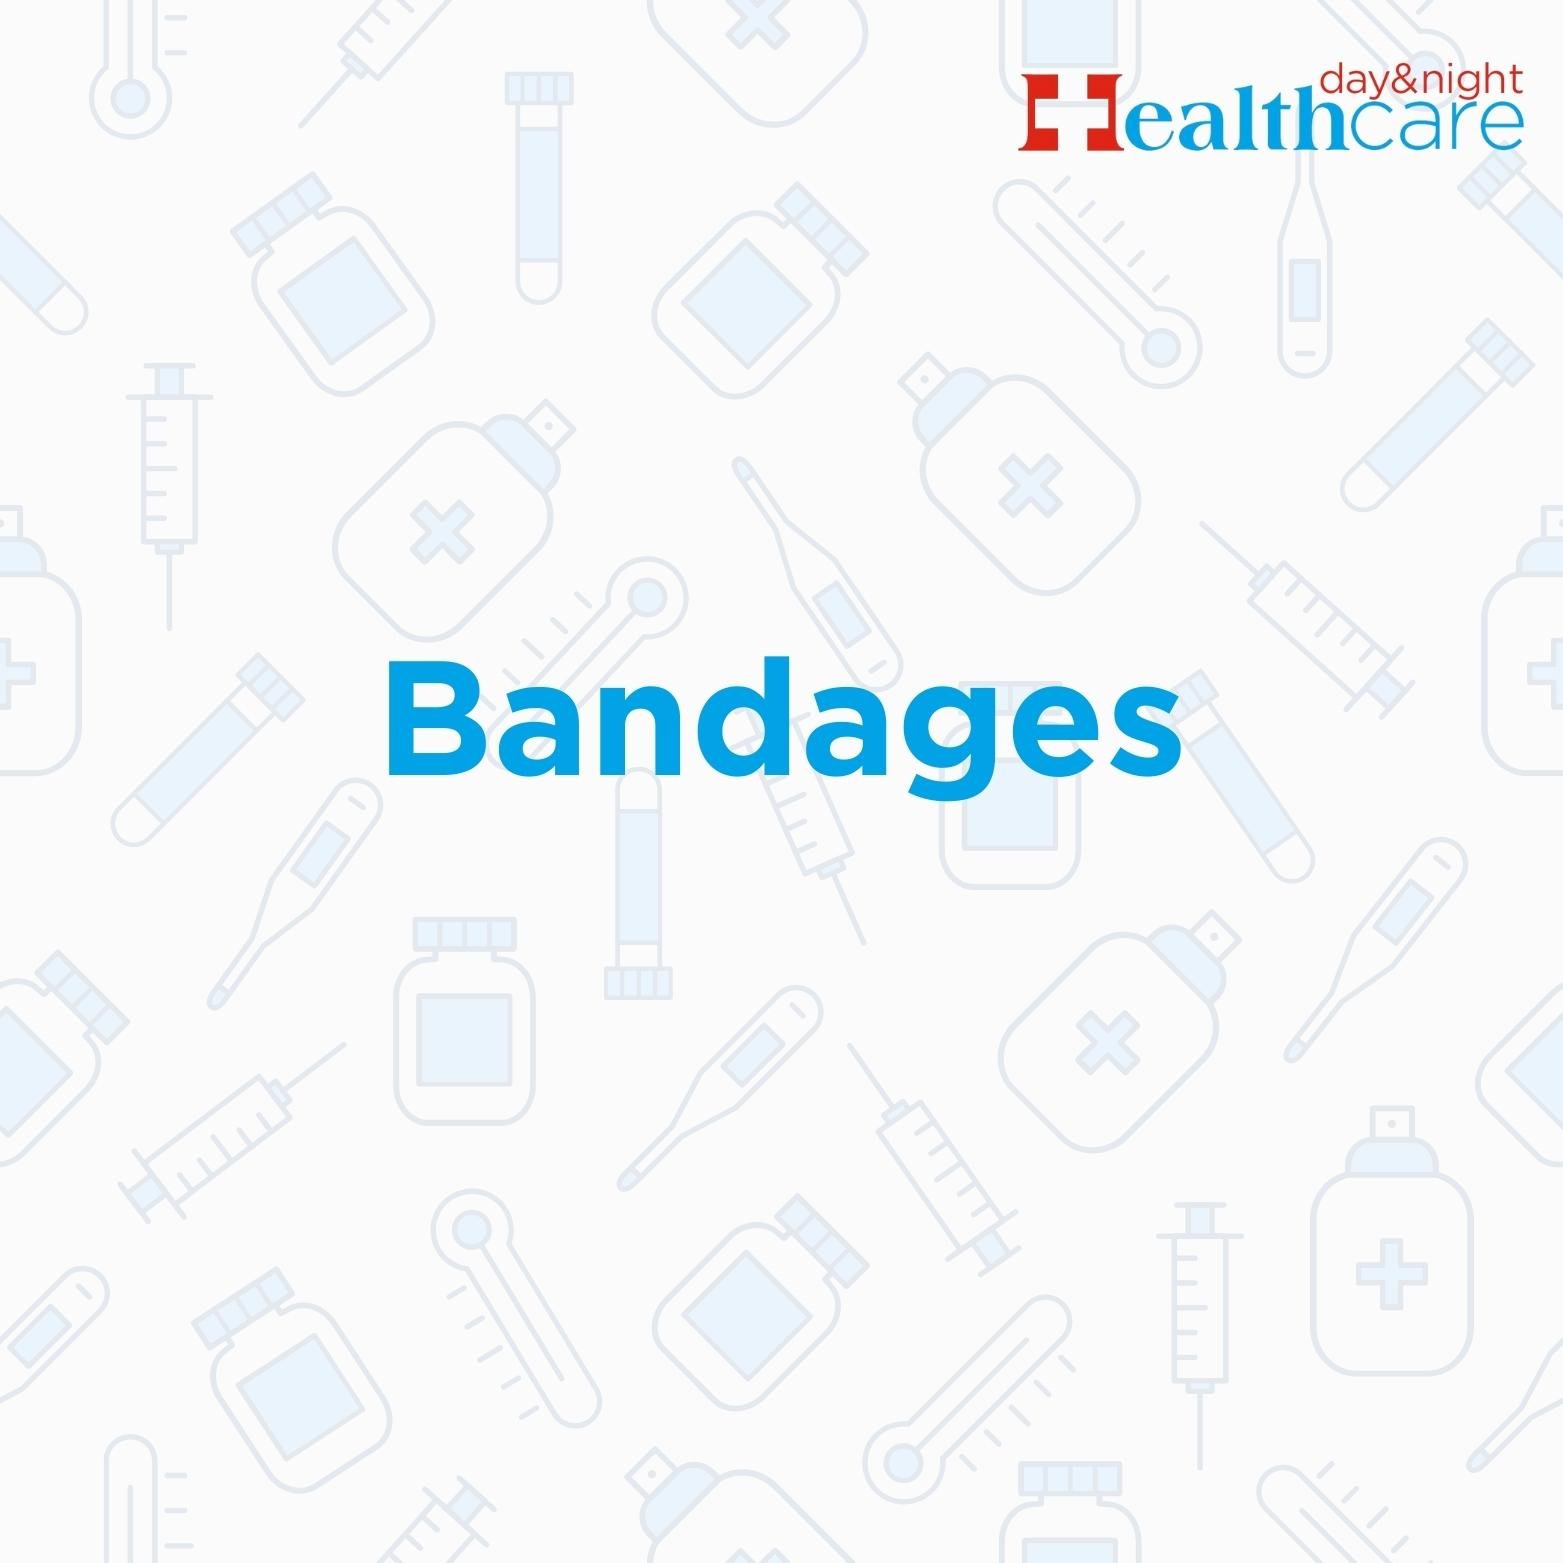 Bandages